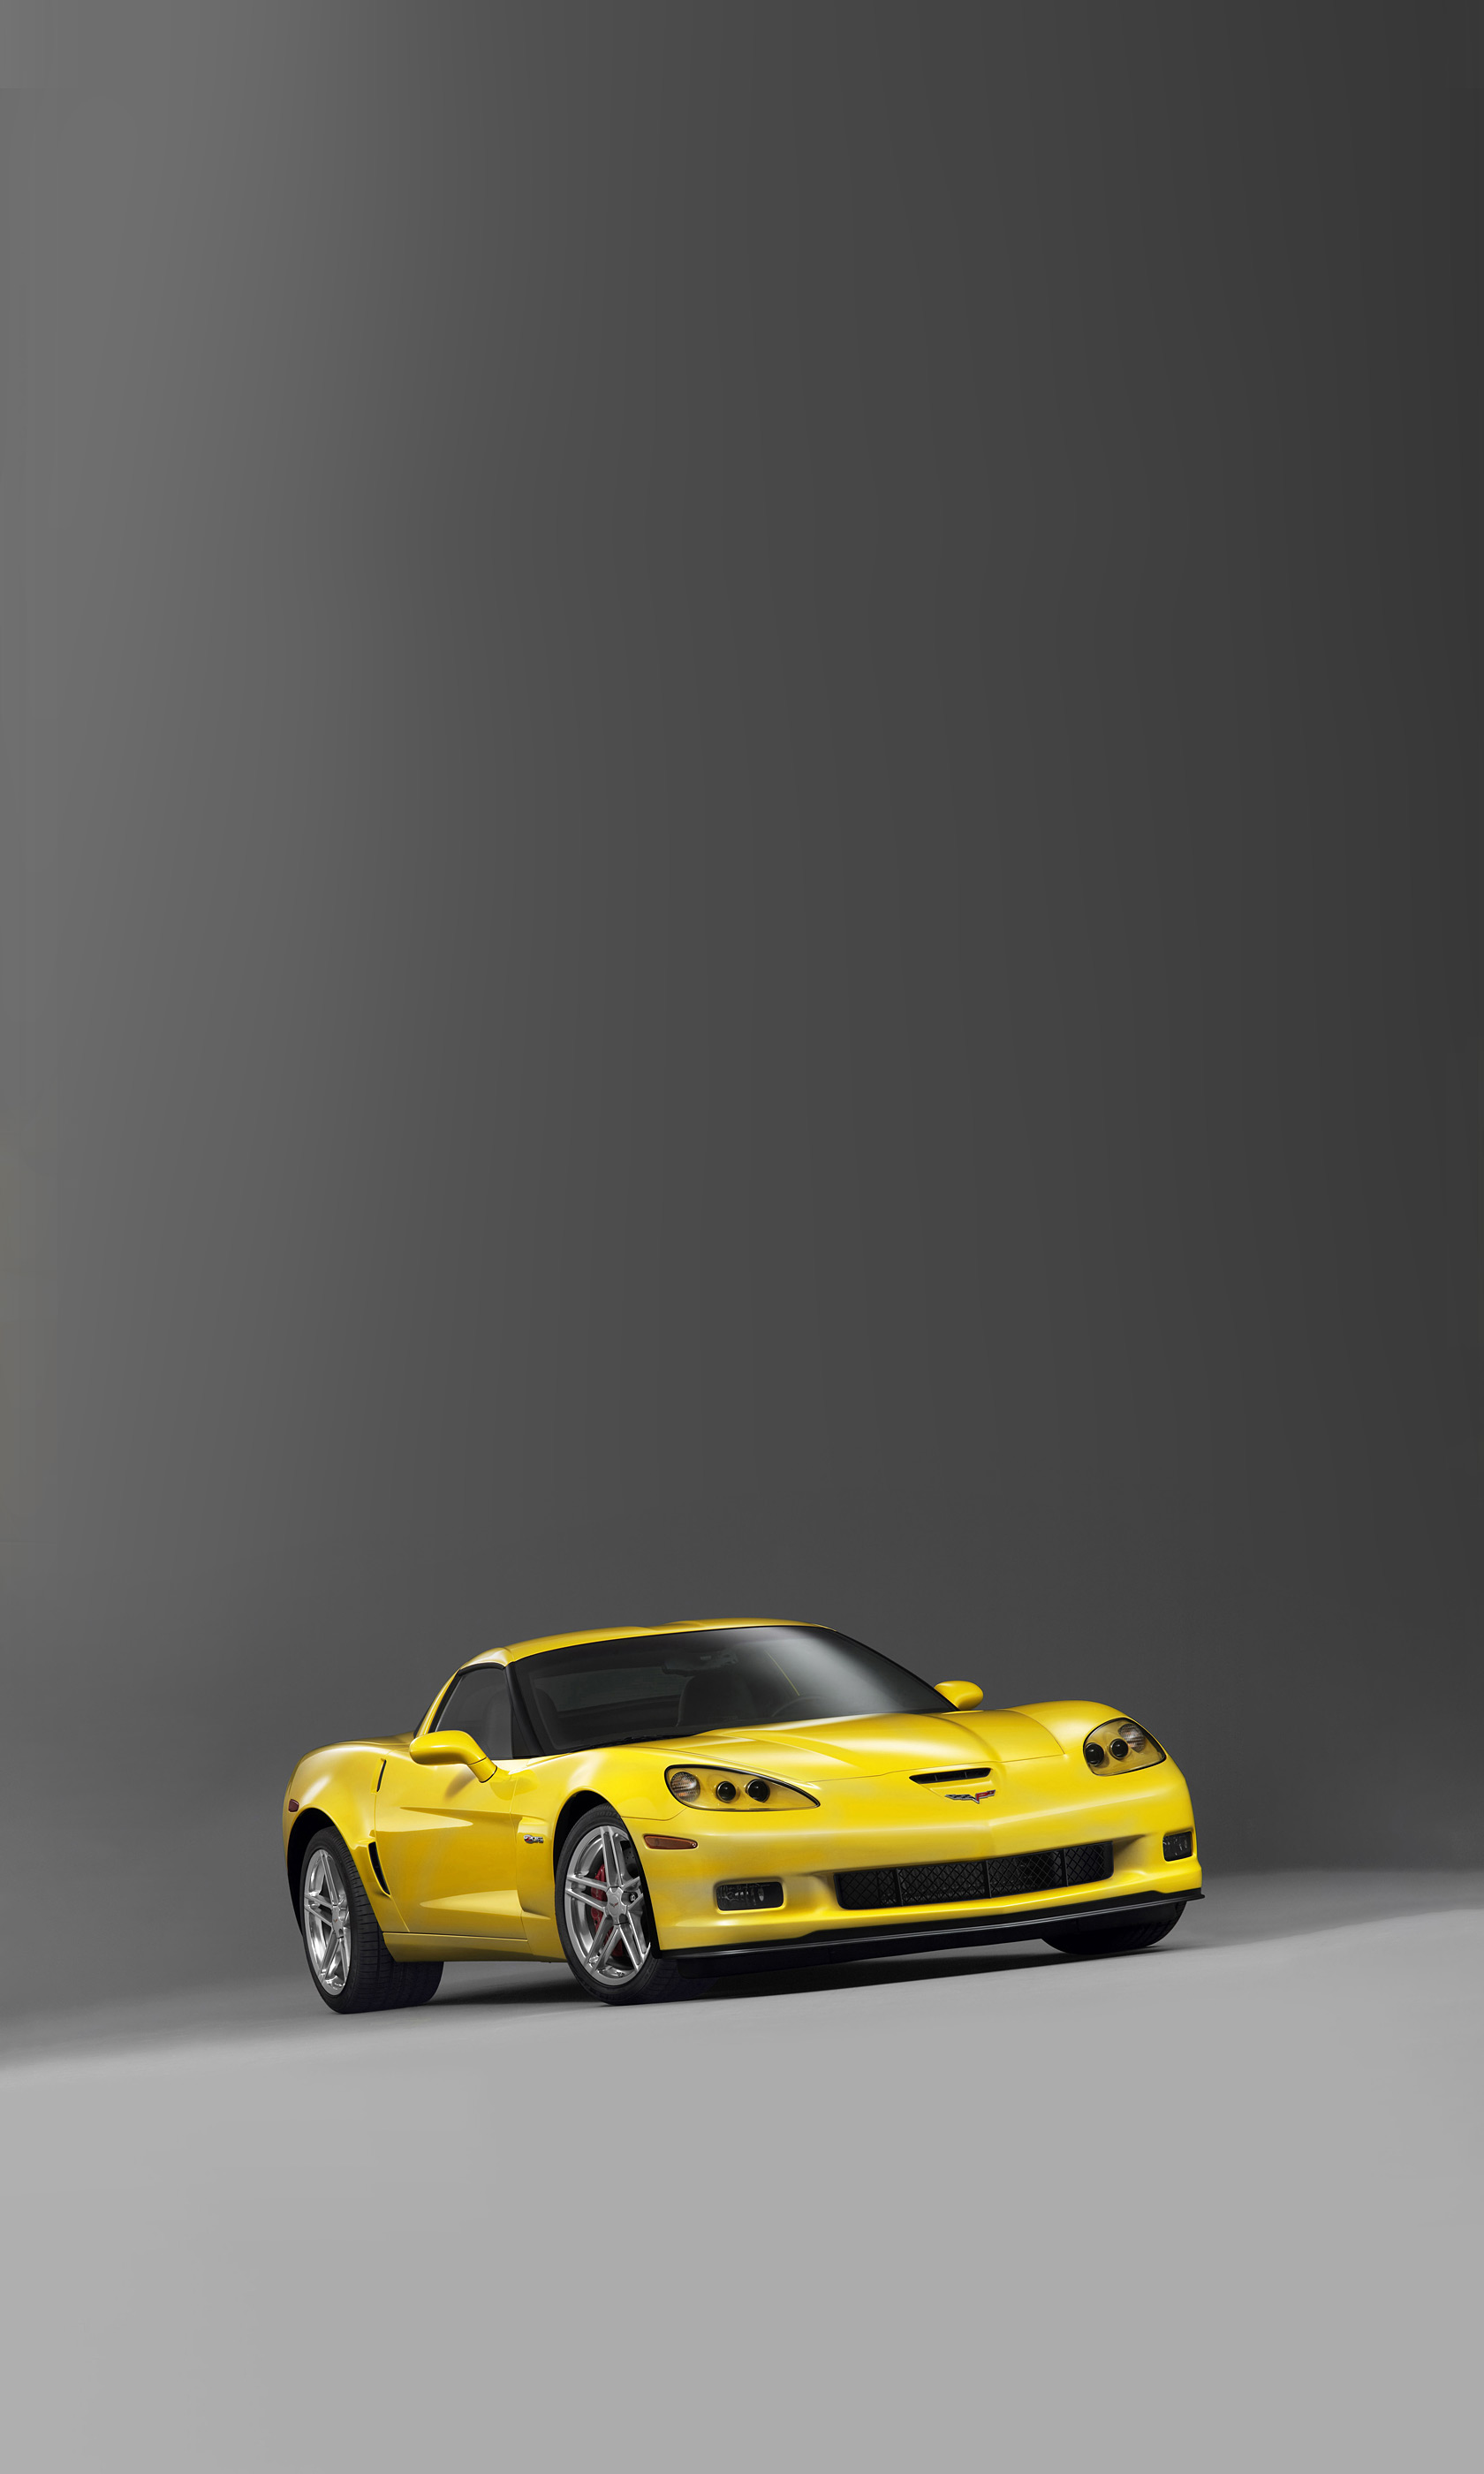  2006 Chevrolet Corvette Z06 Wallpaper.